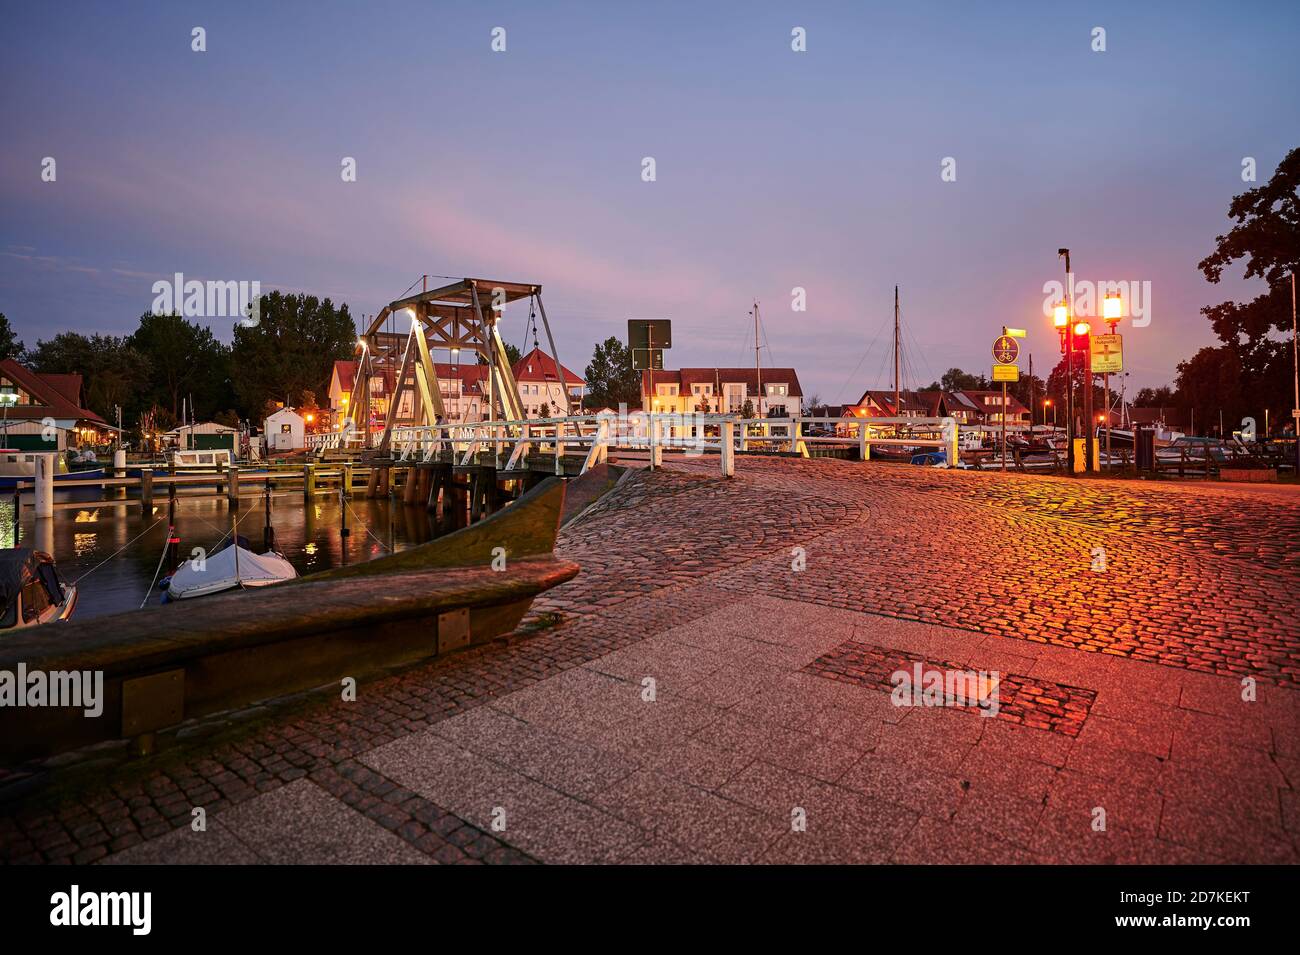 Greifswald, Deutschland - 30. August 2020: Blick auf den Greifswalder Segelhafen mit der historischen Bascule-Brücke und reflektierenden Lichtern zur blauen Stunde. Stockfoto